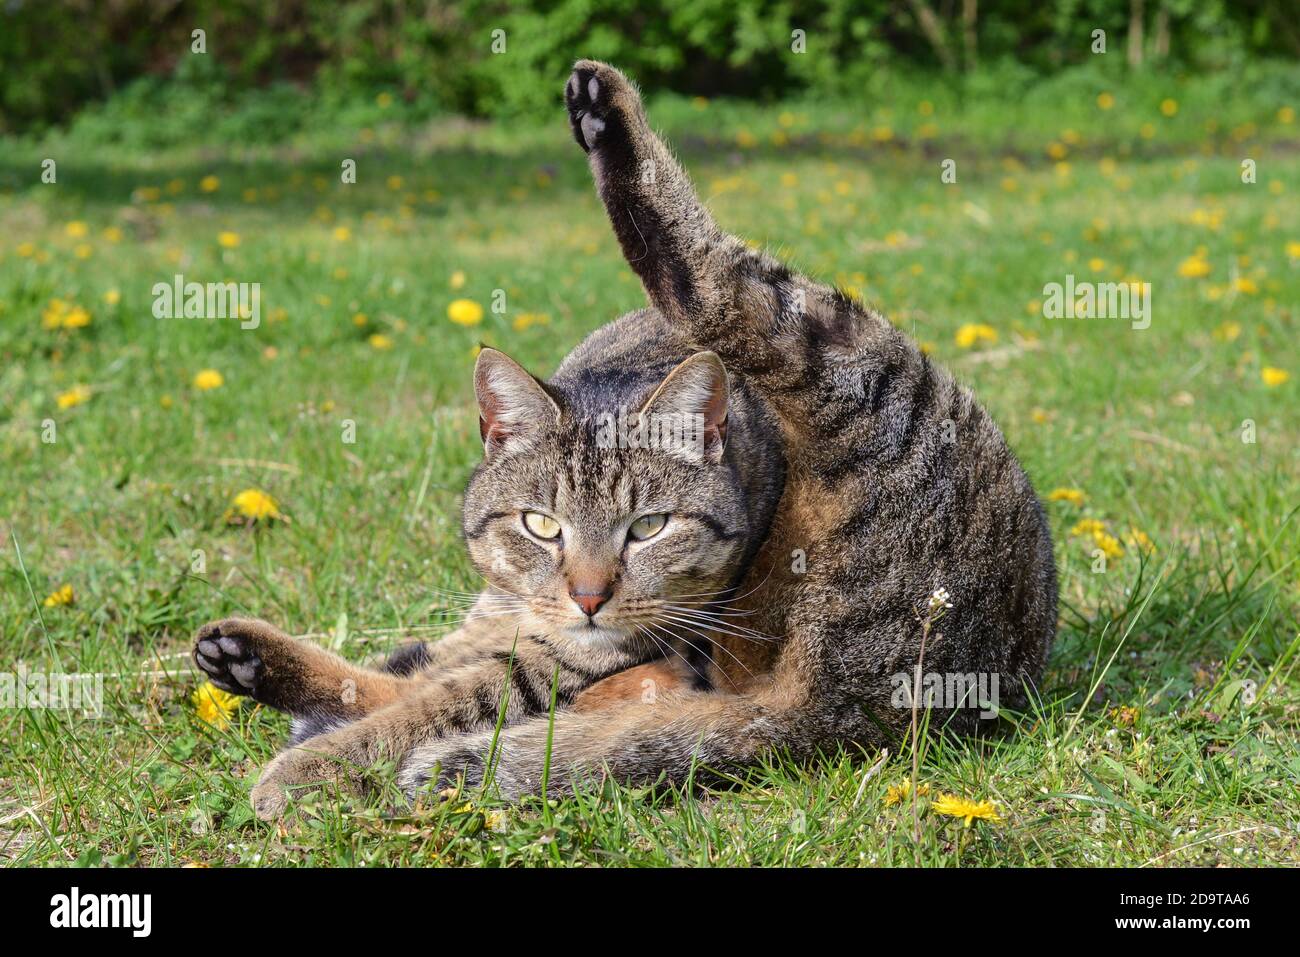 Katzen-Yoga: Eine Katze übt komische Bewegungen auf dem Bauernhof - Katze-Yoga: Eine Katze übt auf einem Bauernhof seltsame Gymnastik Stockfoto